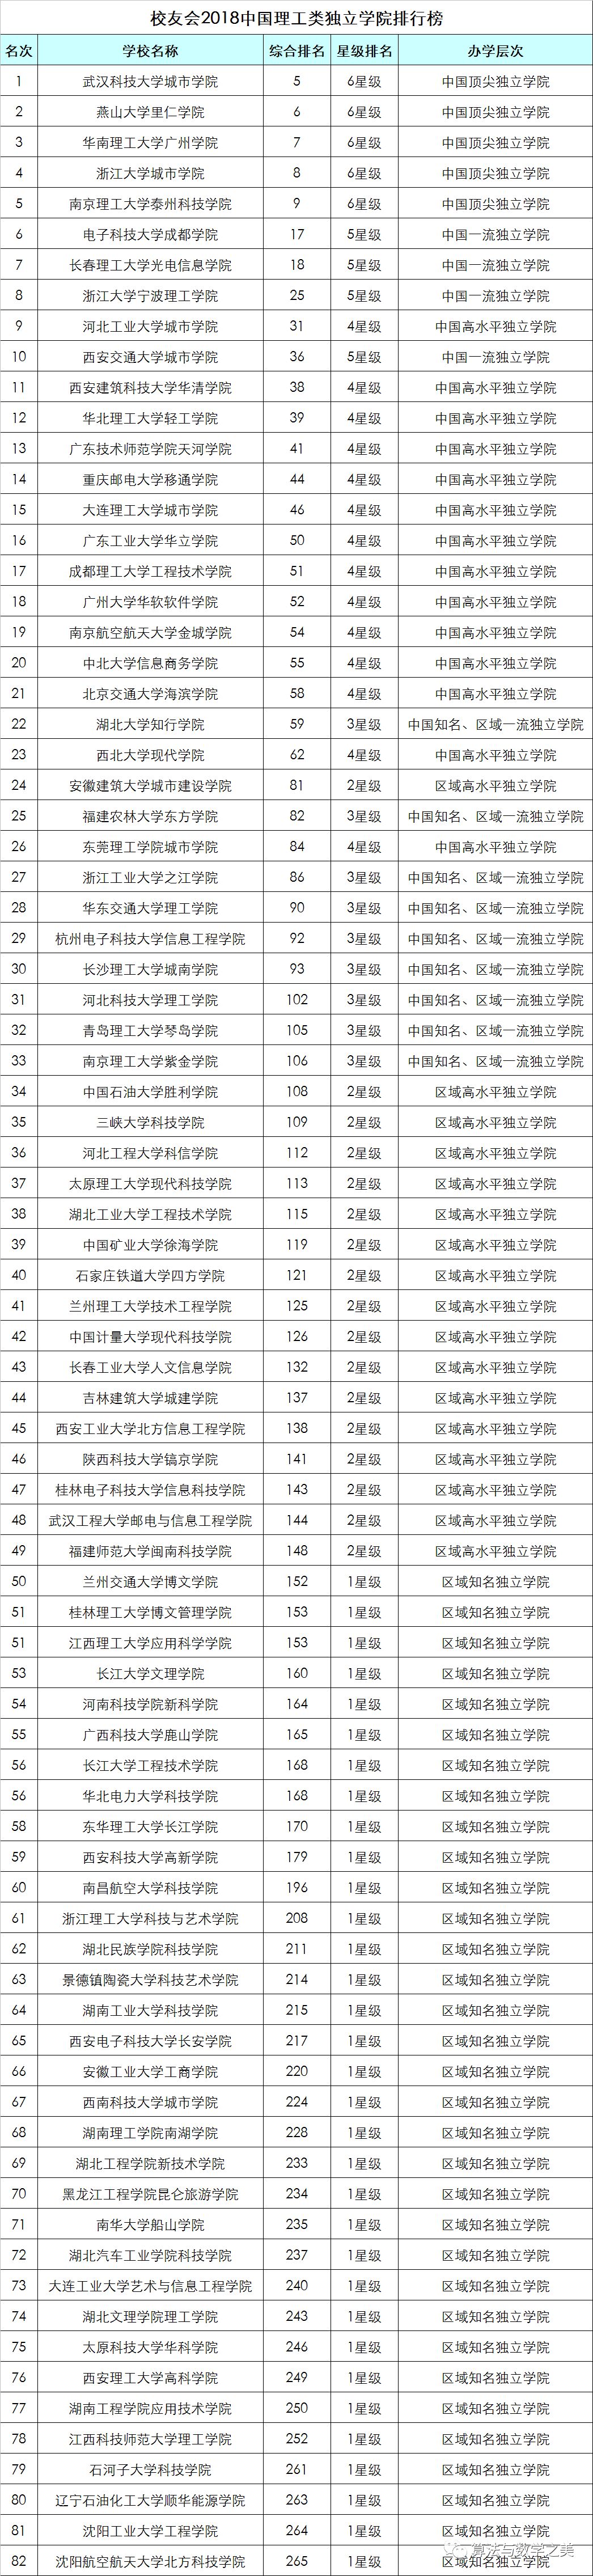 校友会2018中国理工类大学排名出炉，华中科技大学第二